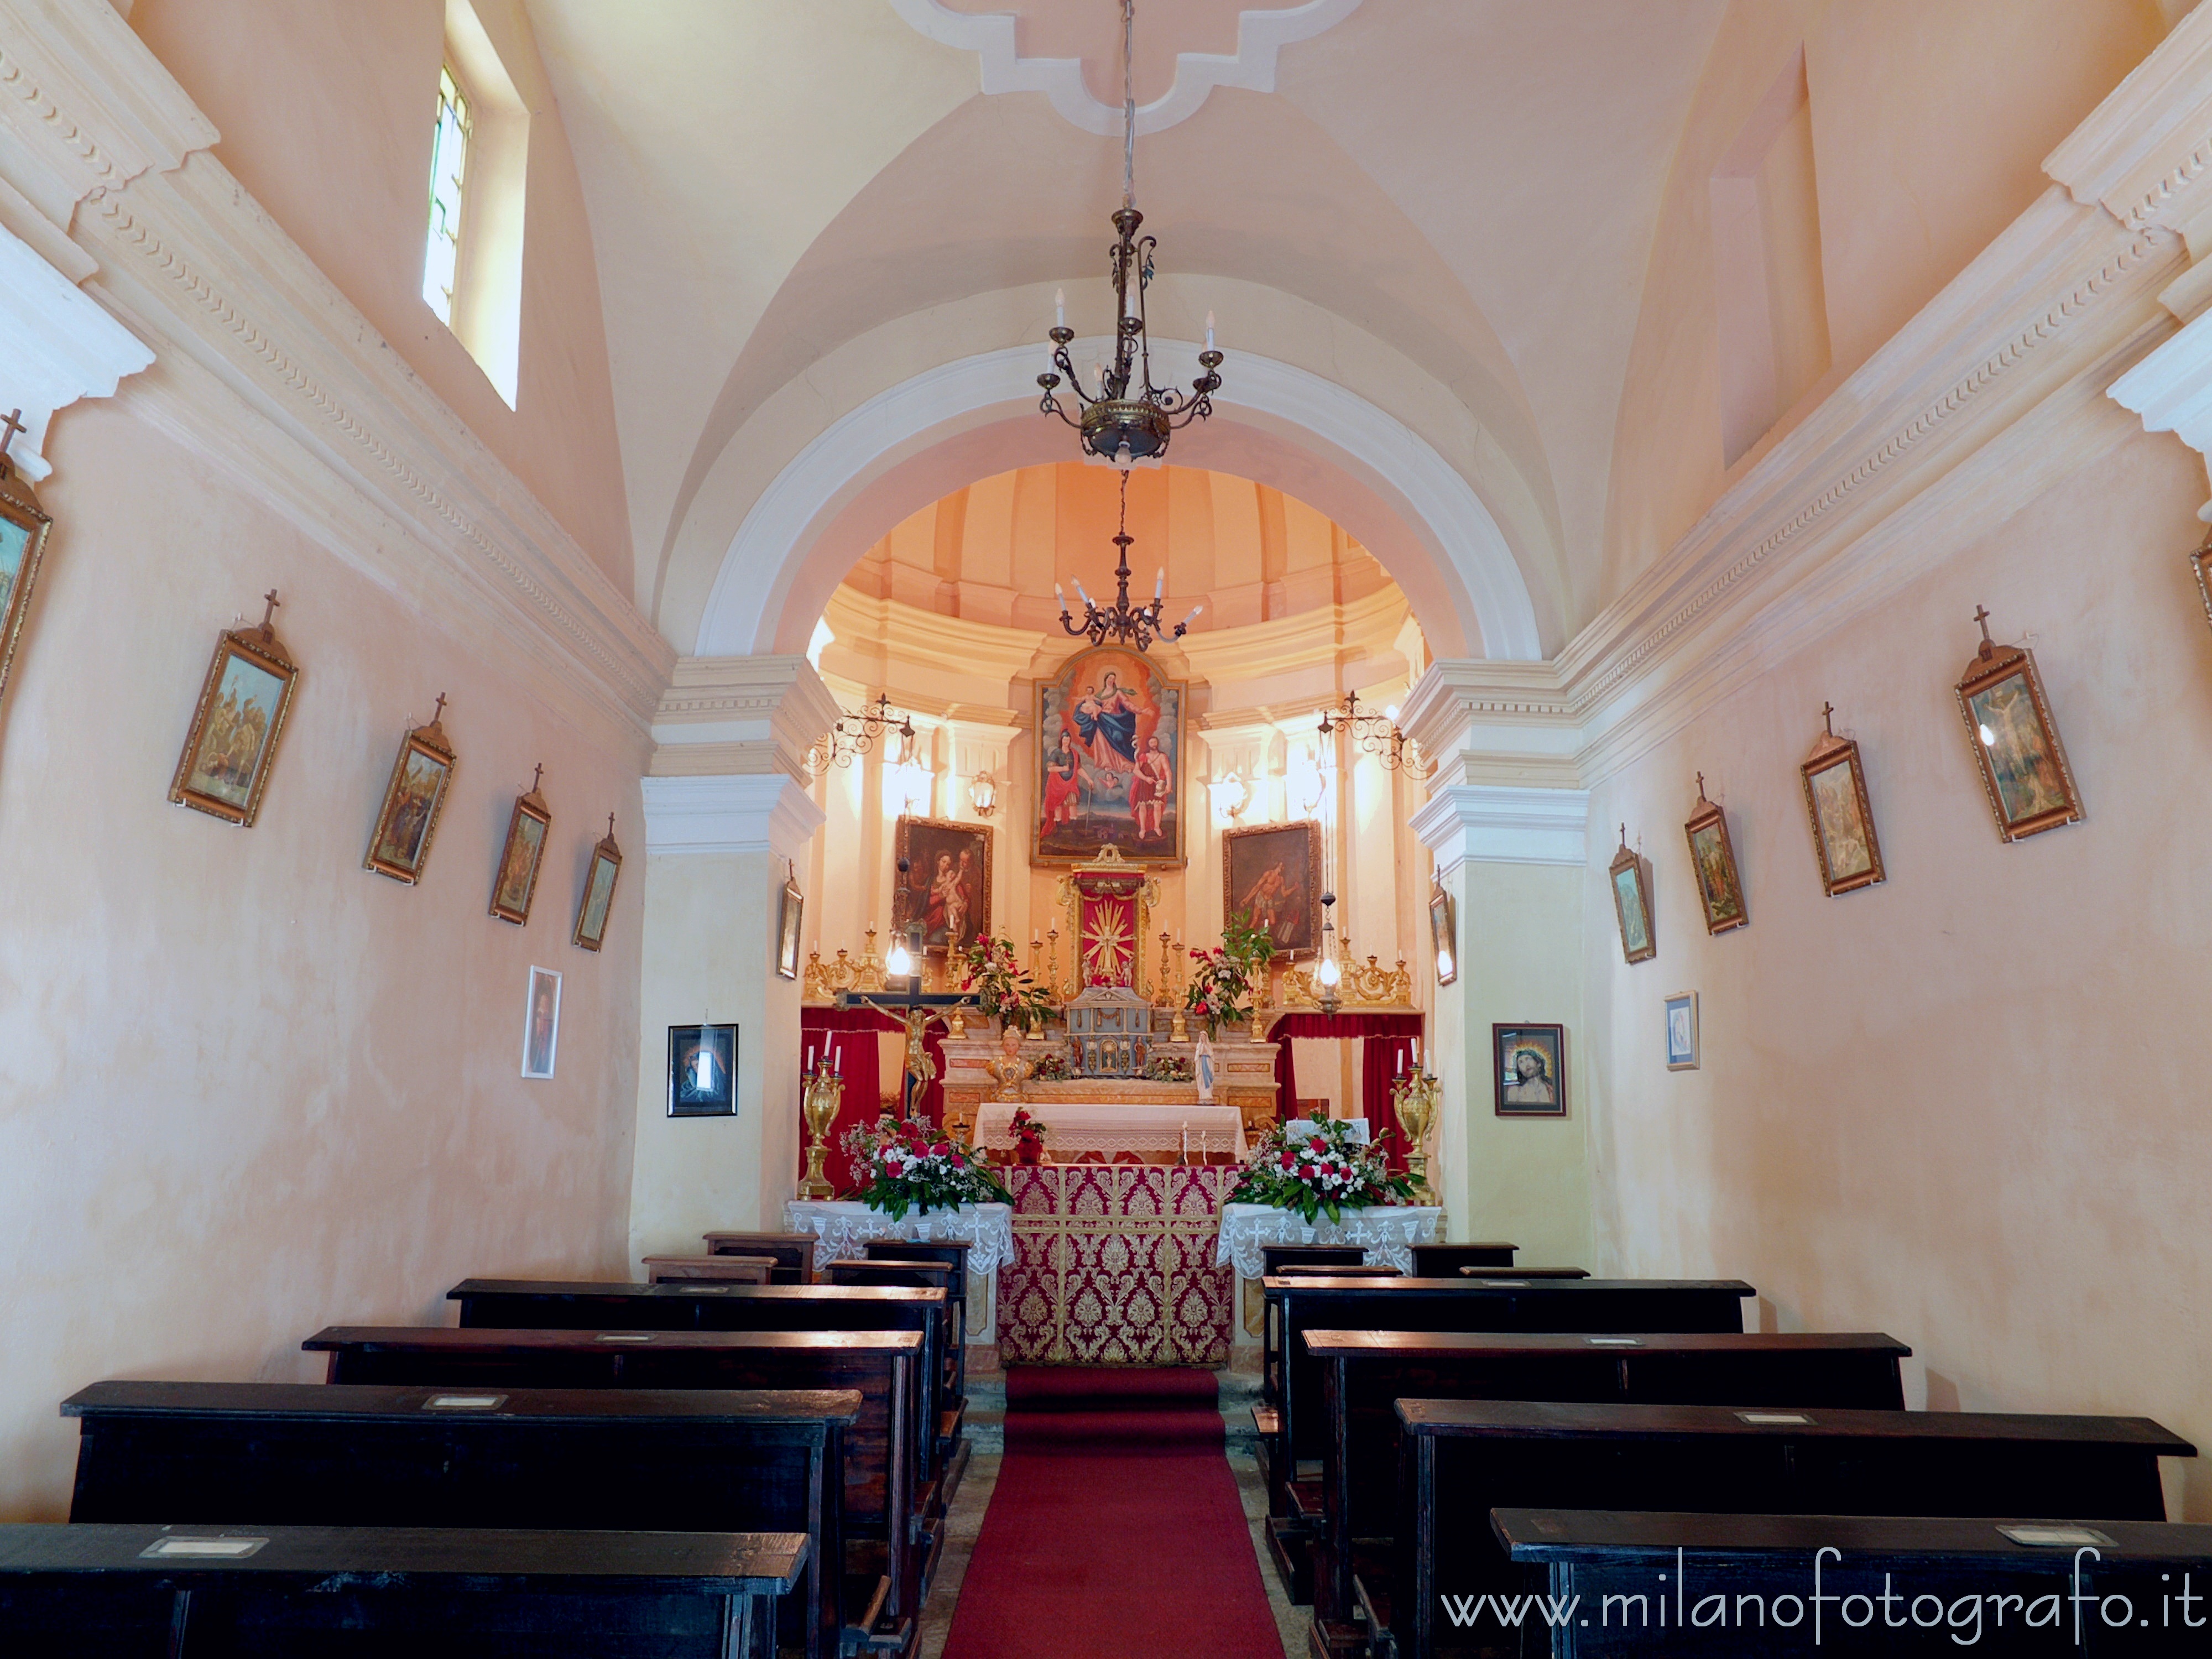 Rosazza (Biella, Italy): Interior of the Oratory of San Defendente - Rosazza (Biella, Italy)